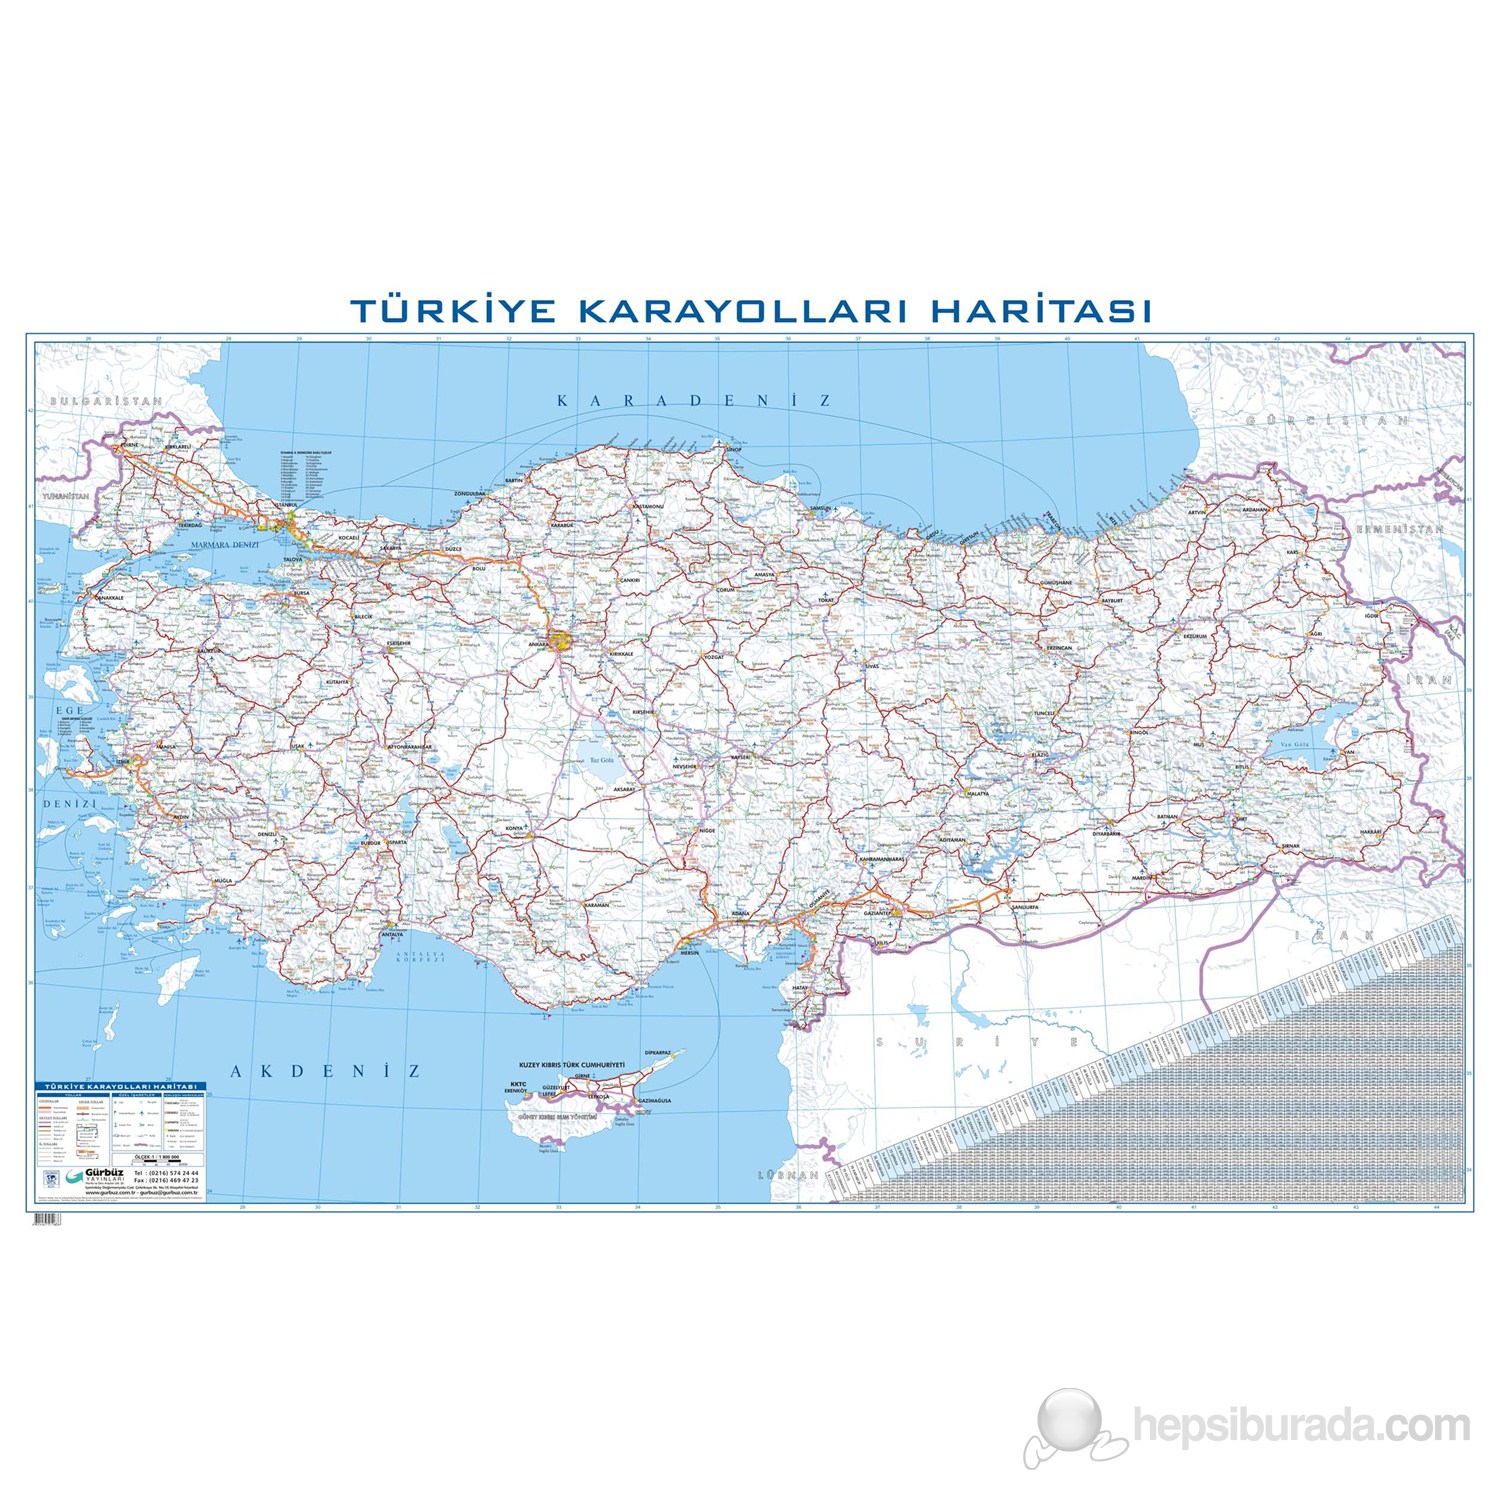 Türkiye Karayolları Haritası 70X100 Fiyatı - Taksit Seçenekleri